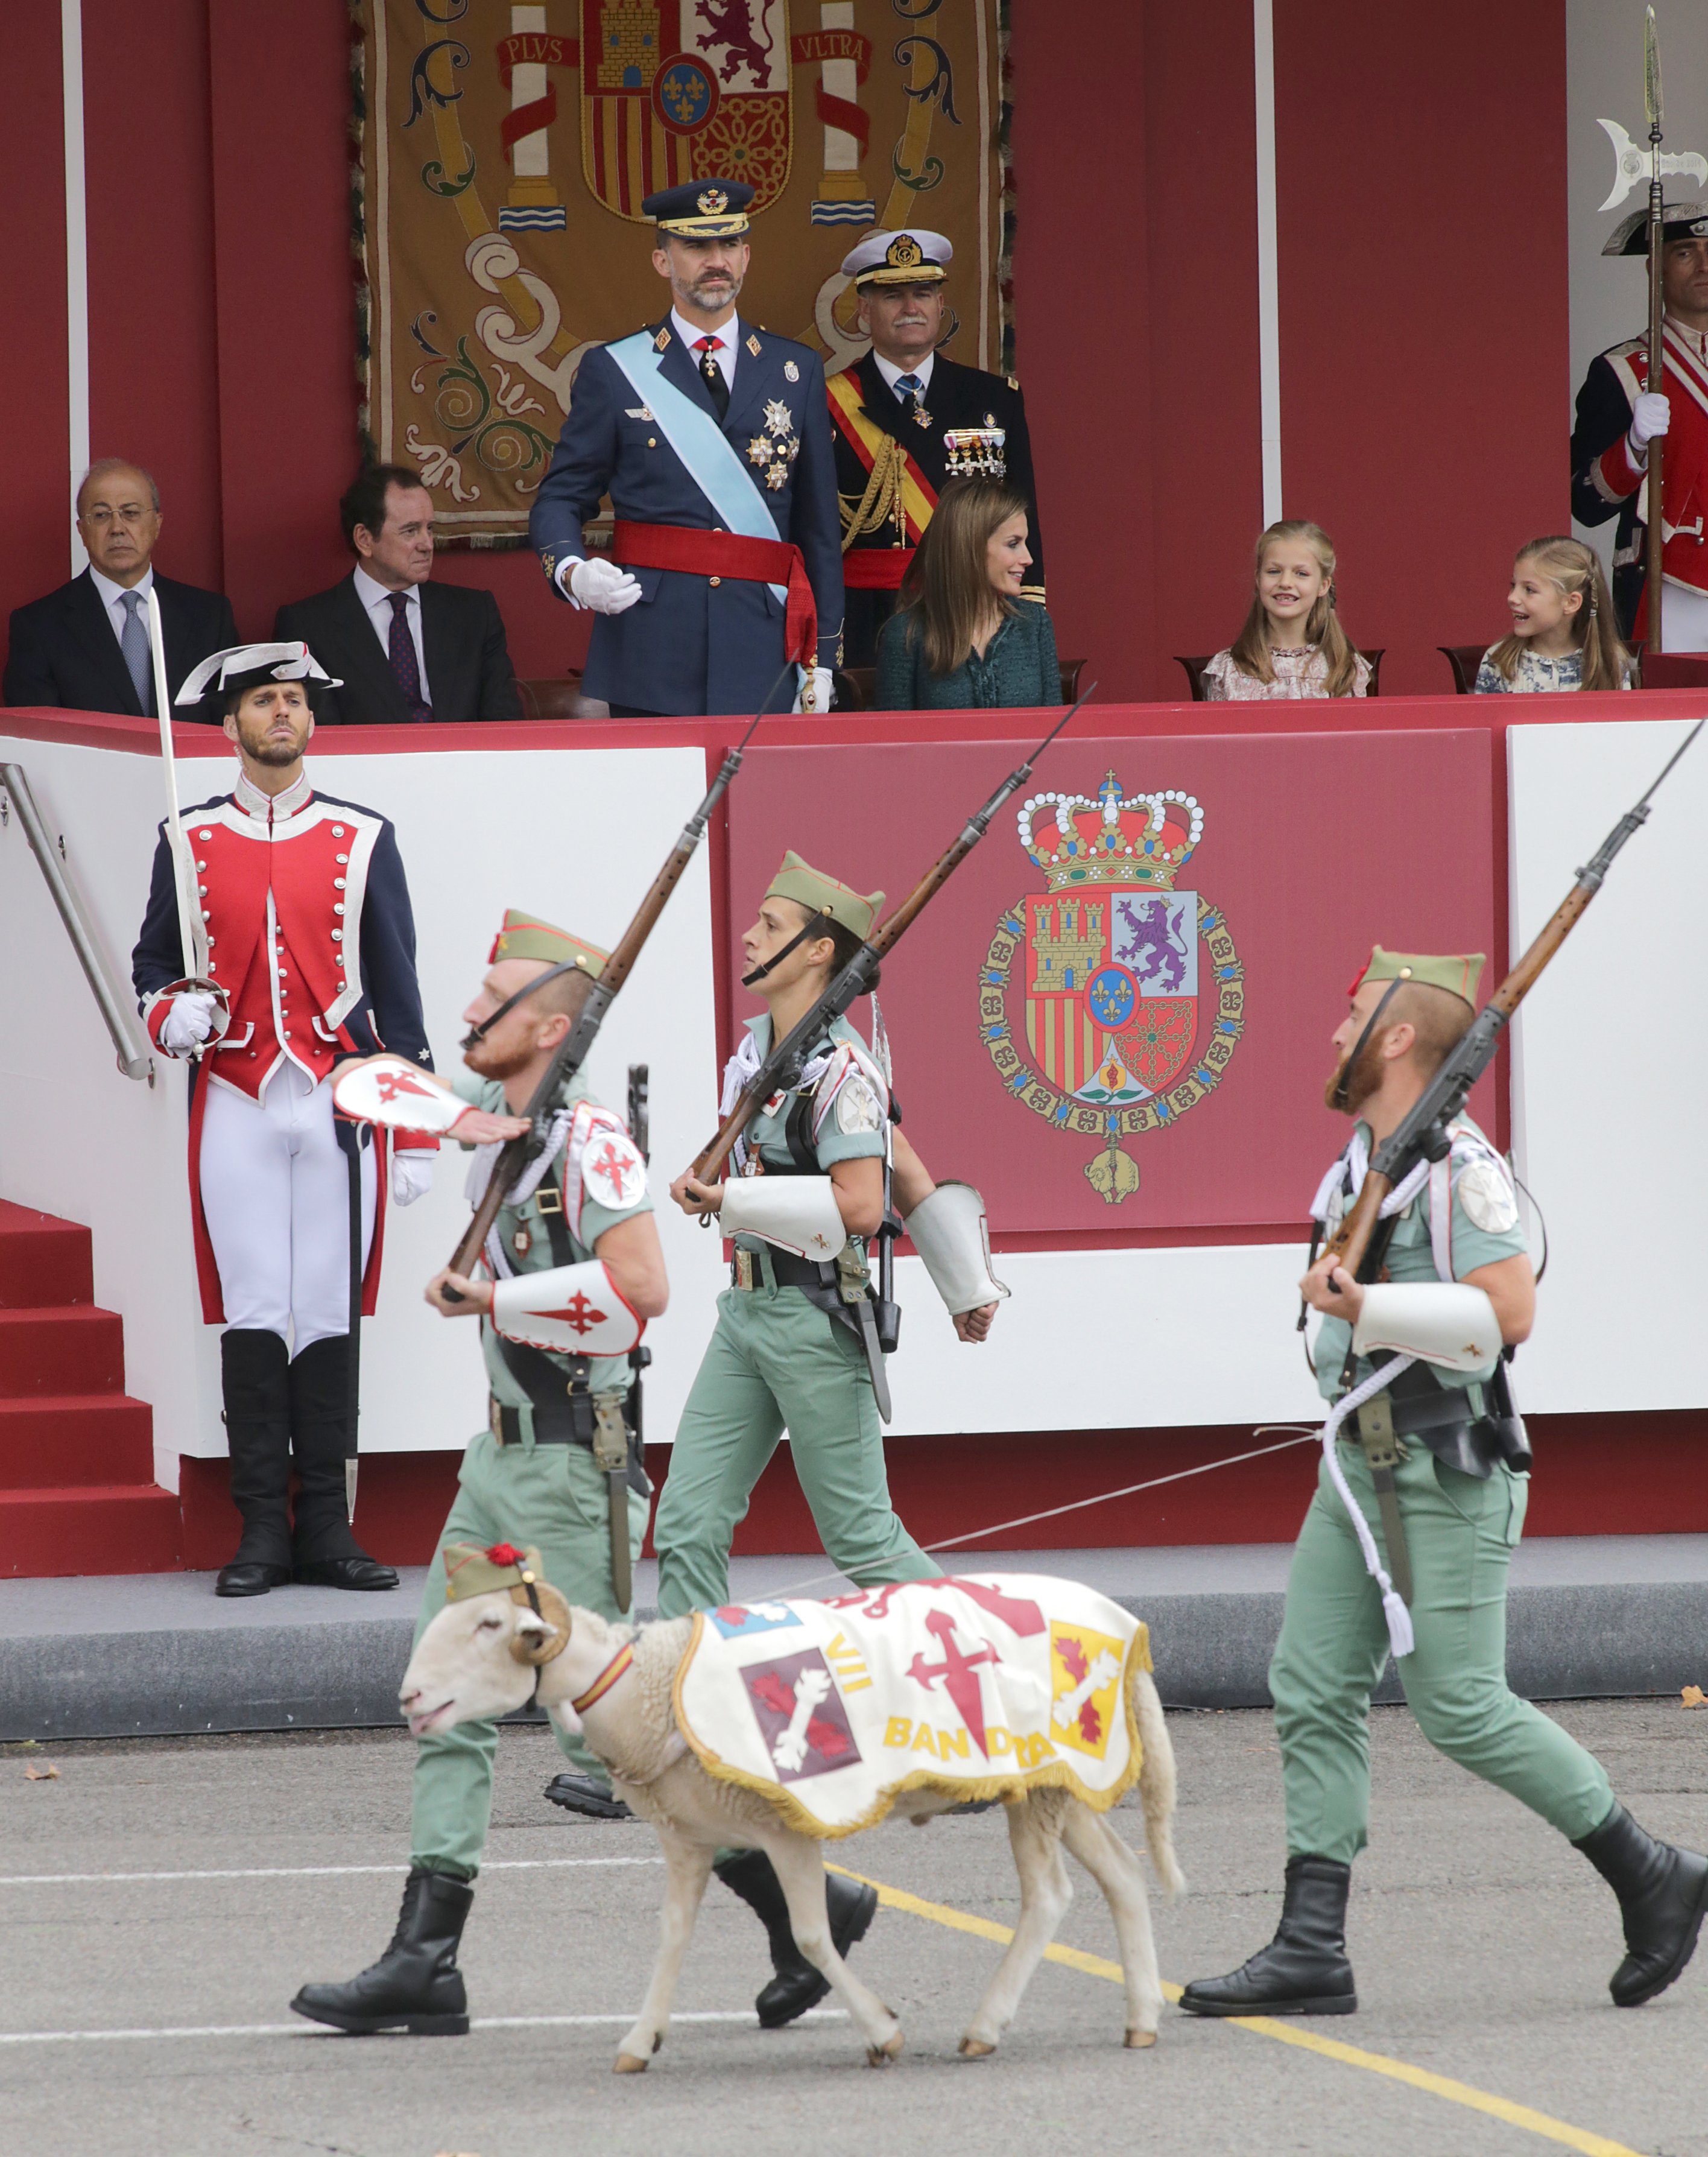 Creus que l'exèrcit espanyol encara és majoritàriament franquista?